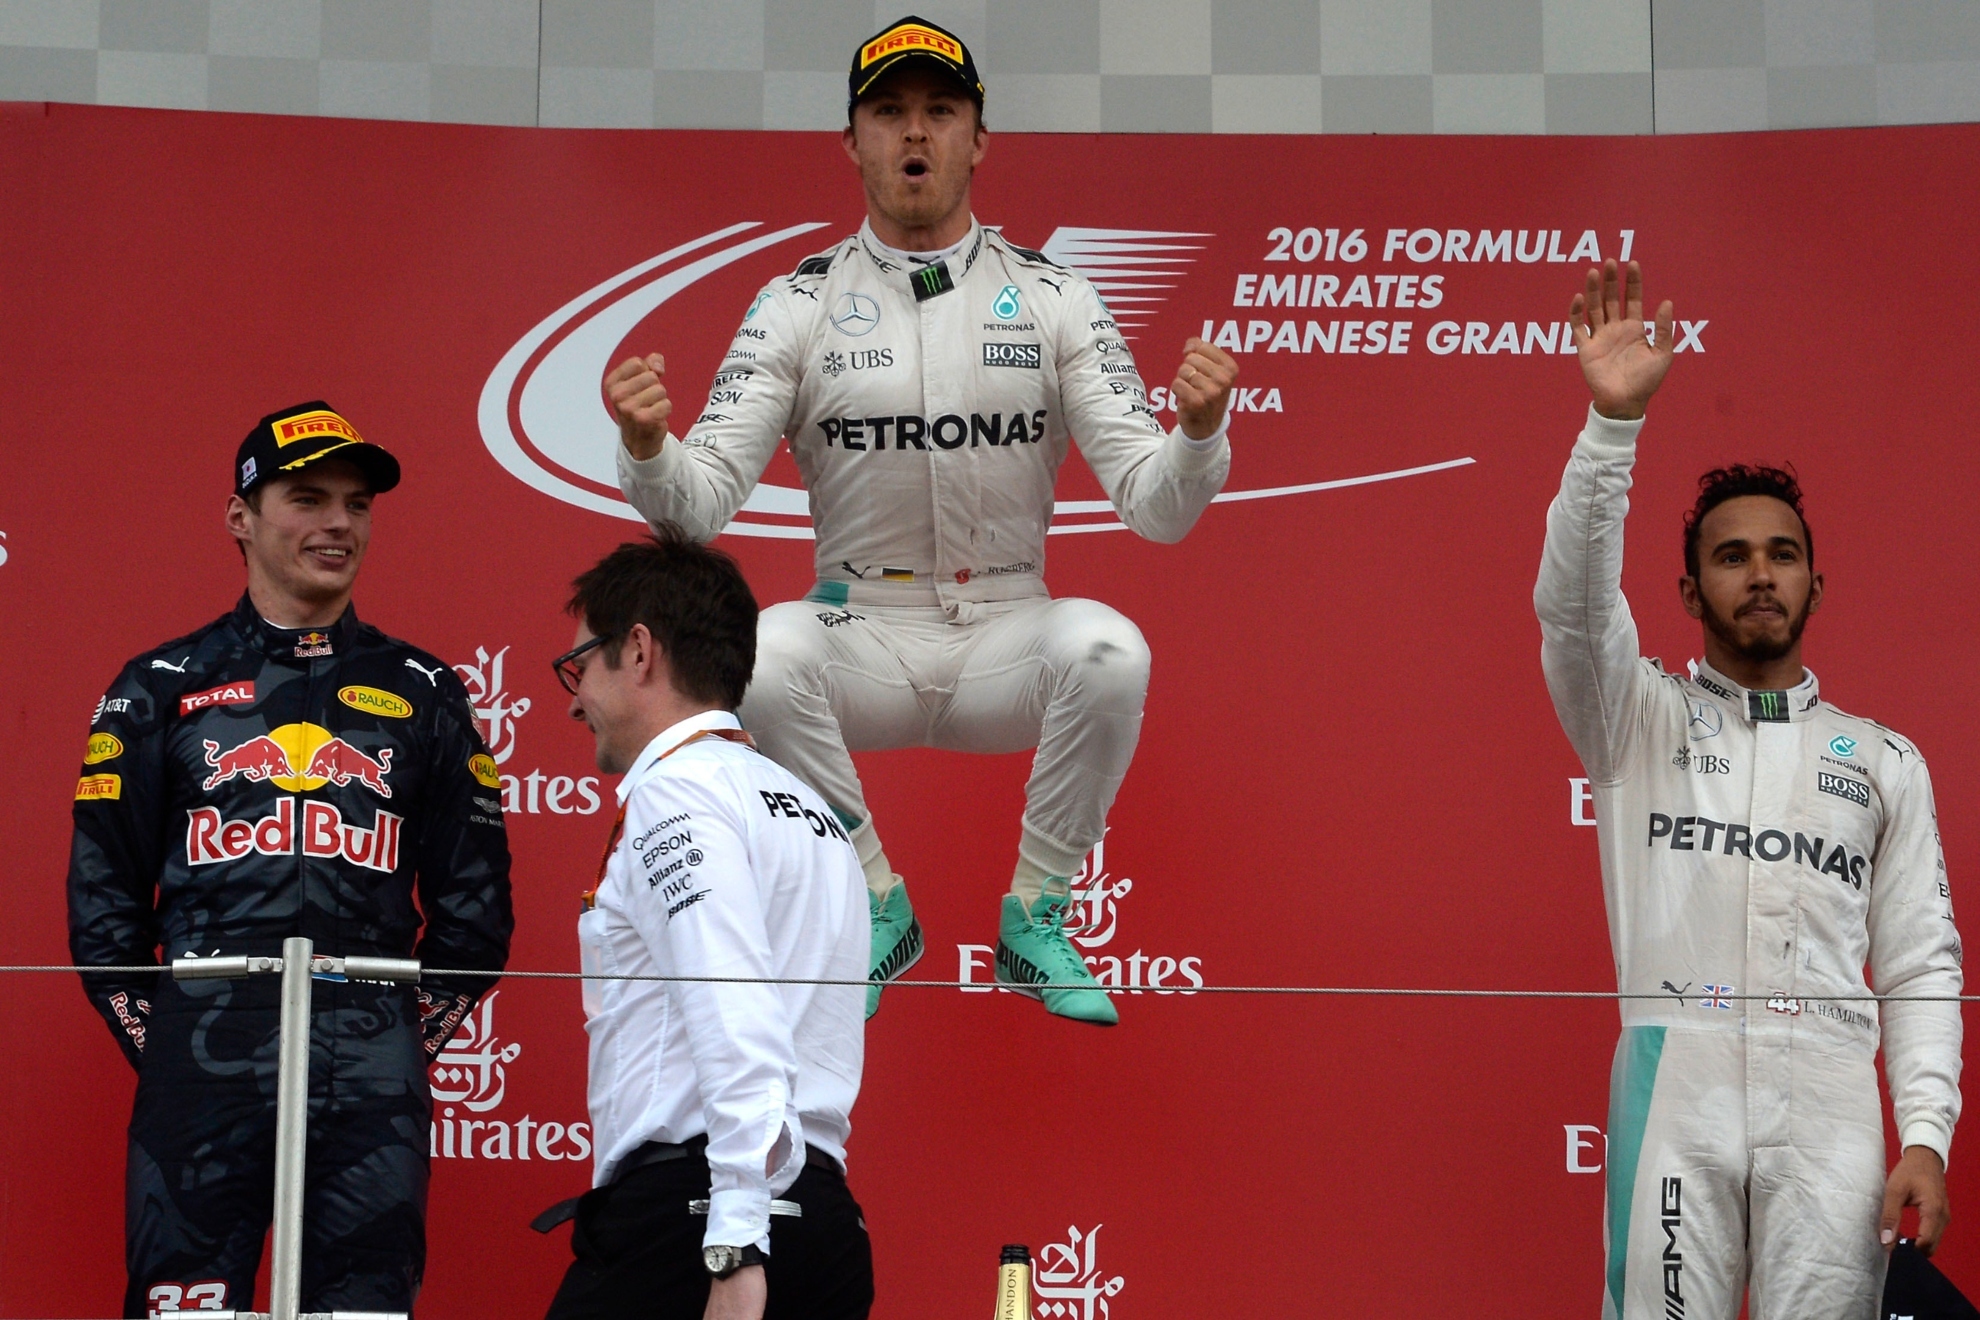 Max Verstappen, Nico Rosberg y Lewis Hamilton en el podio del GP de Japón en 2016